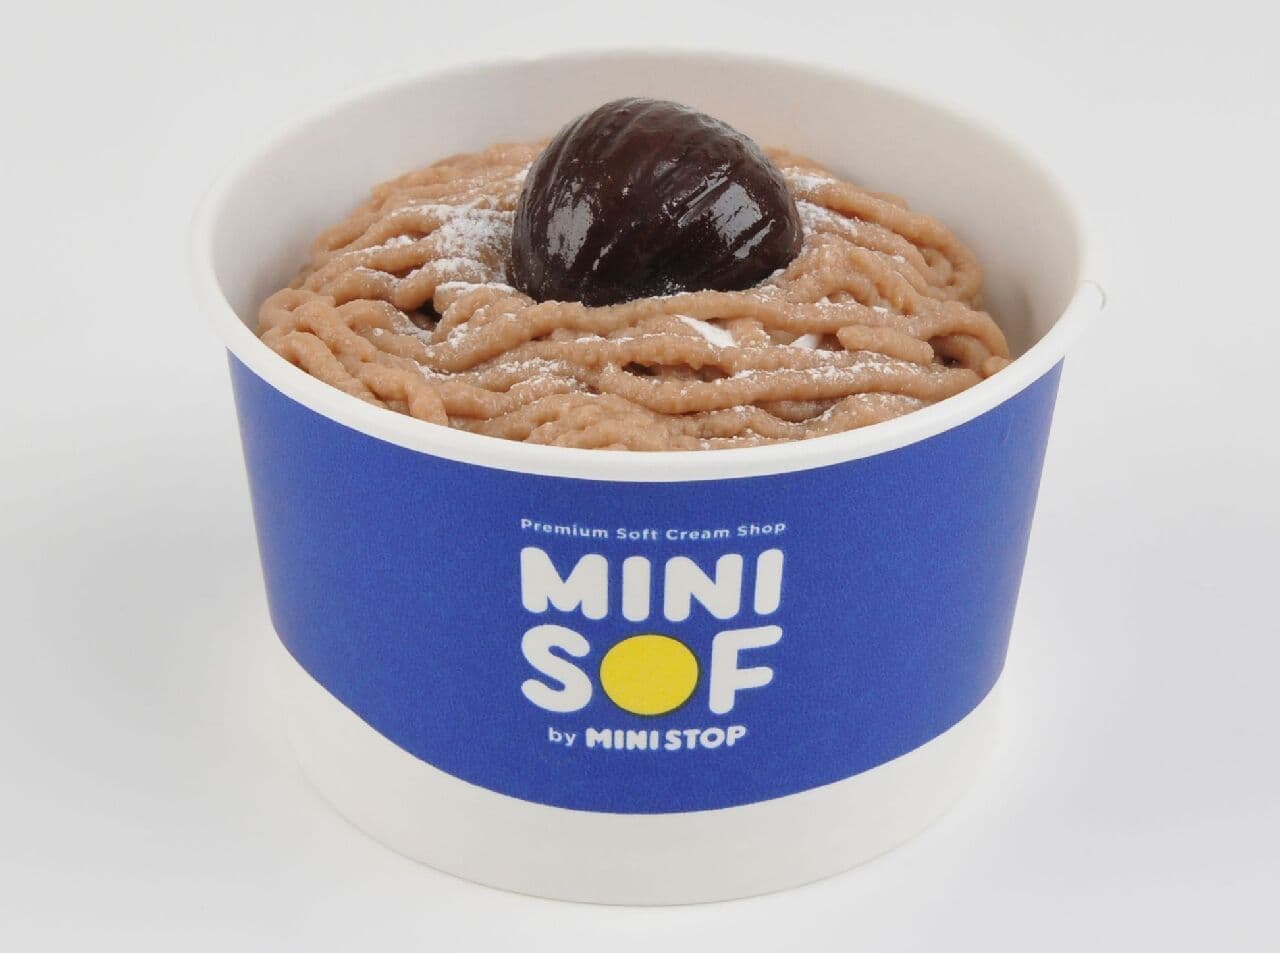 Mini-Sofu "Premium Mont Blanc Soft Serve Ice Cream